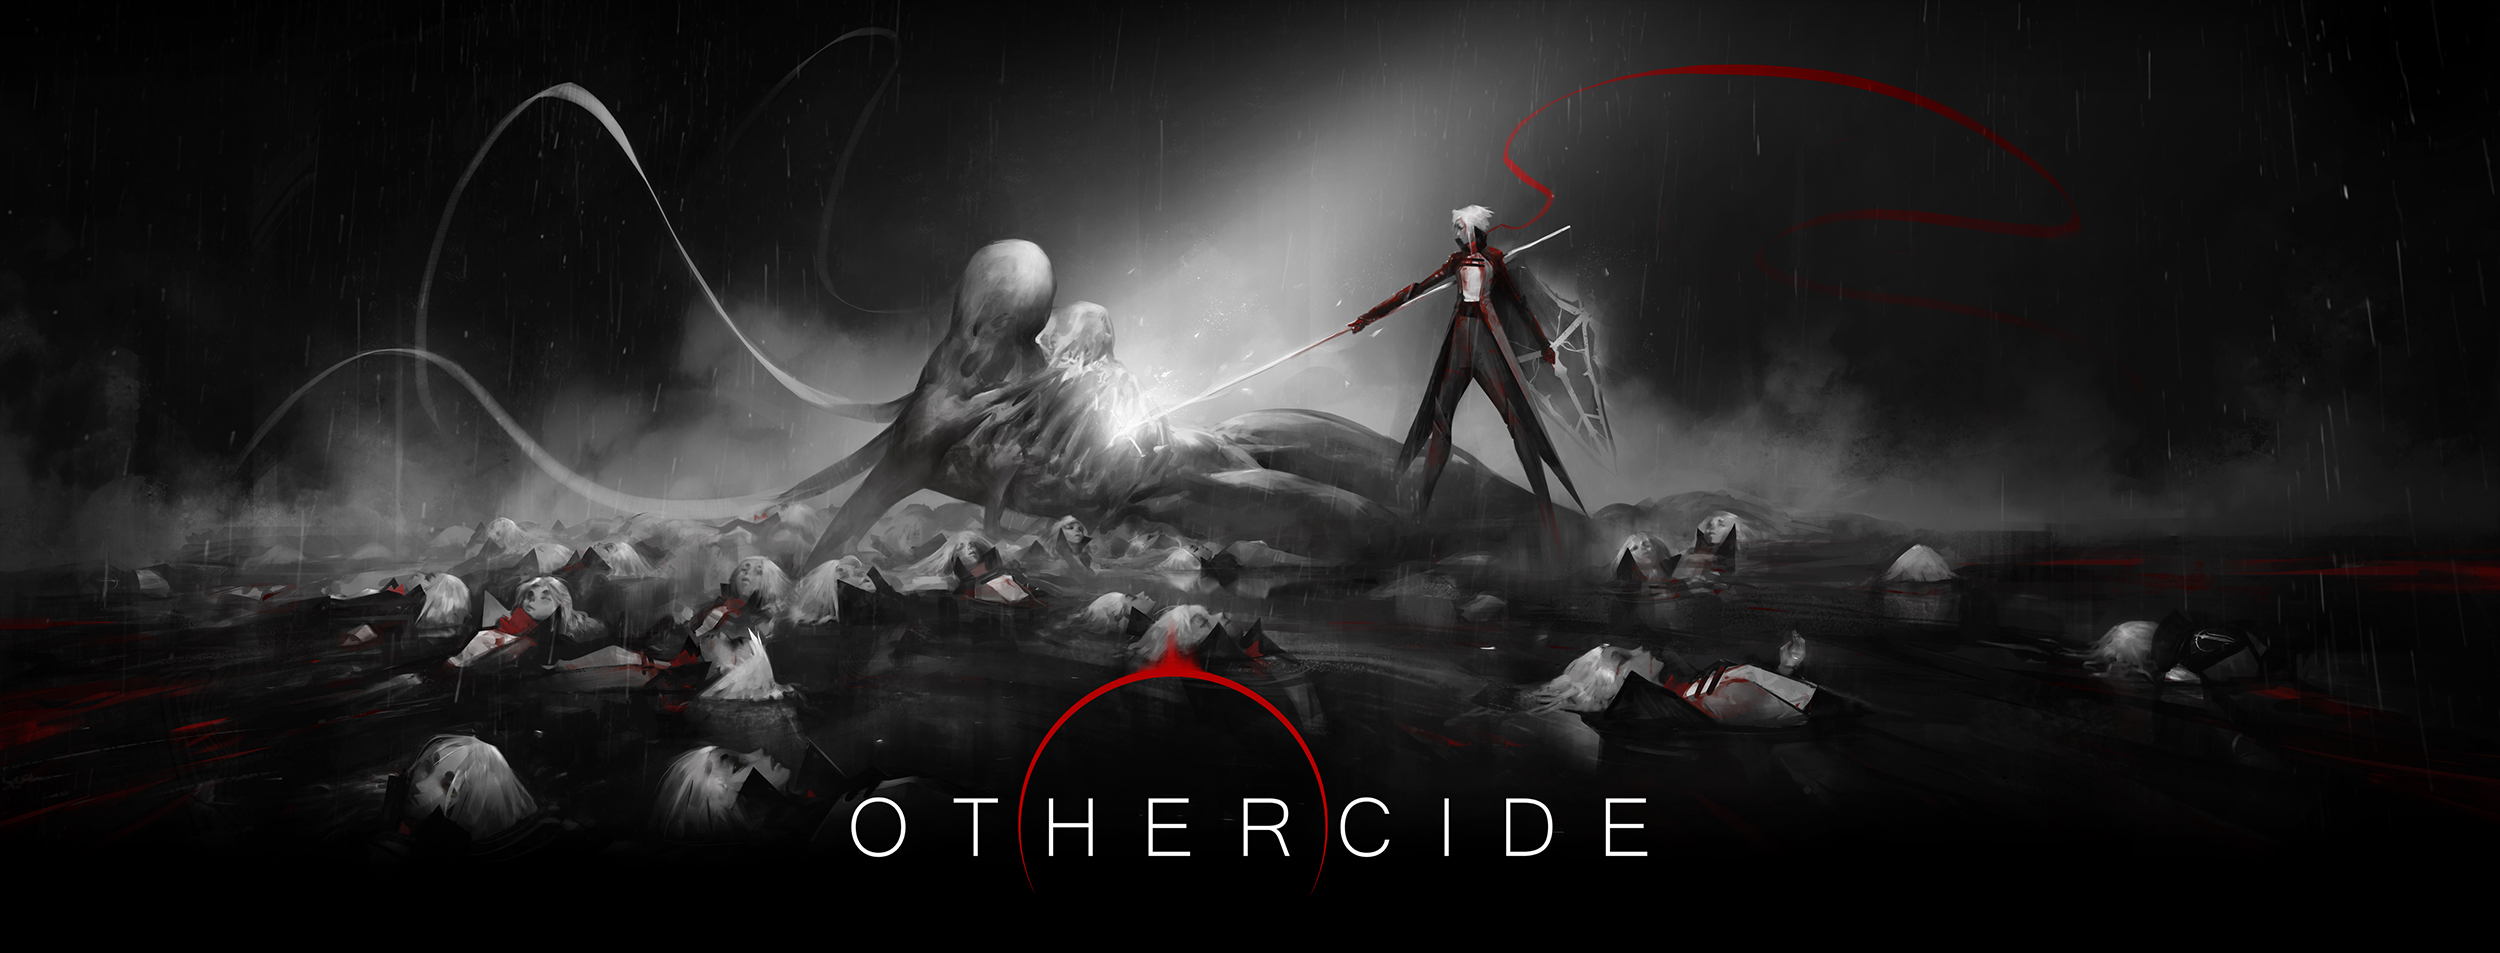 othercide ending